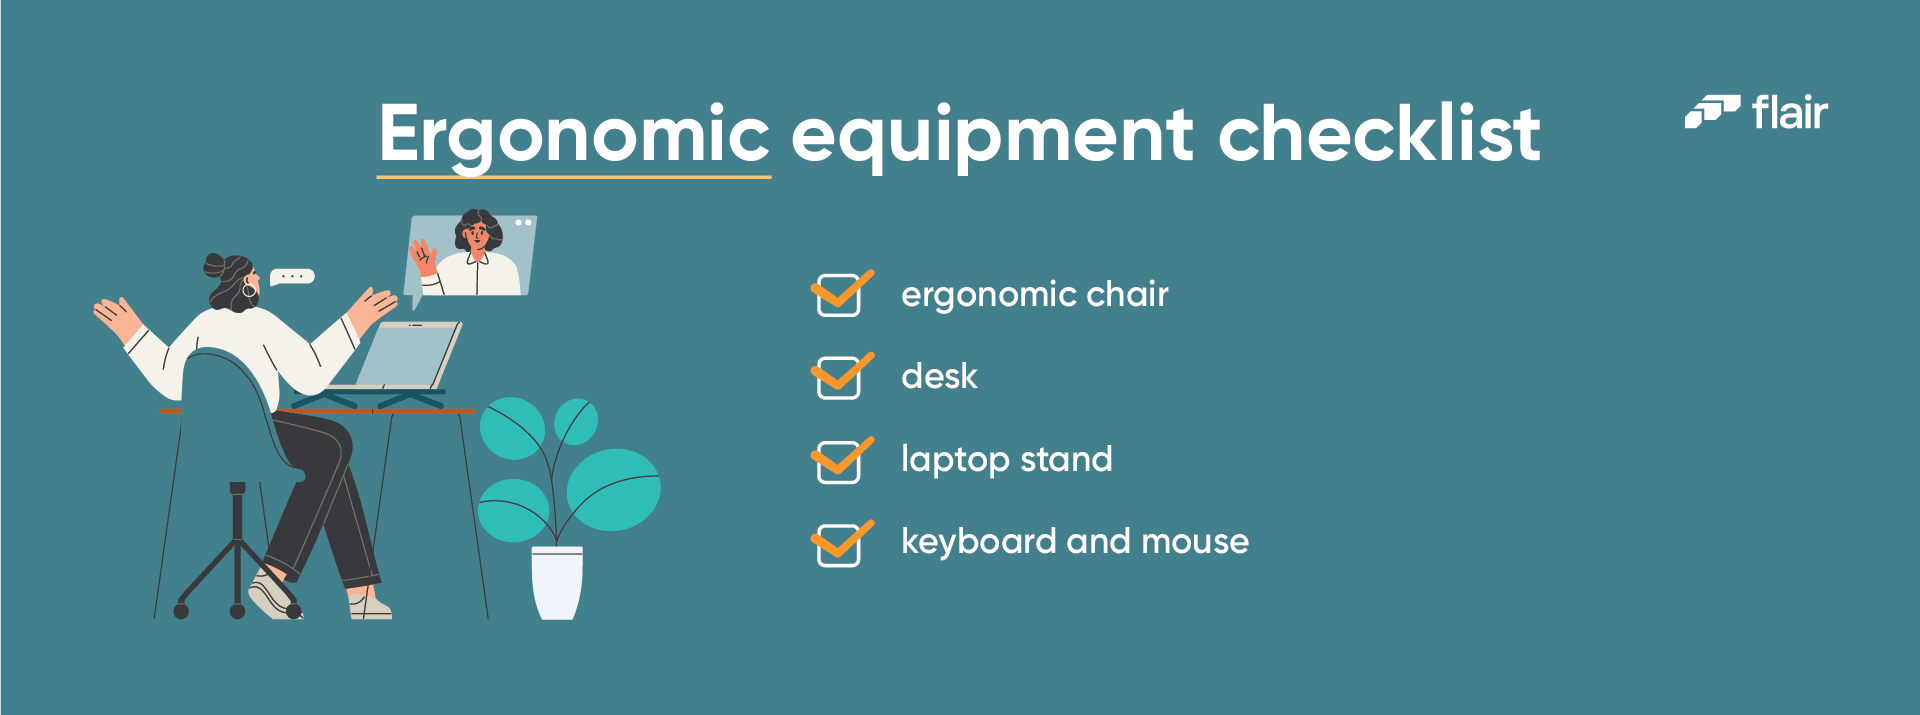 equipment checklist